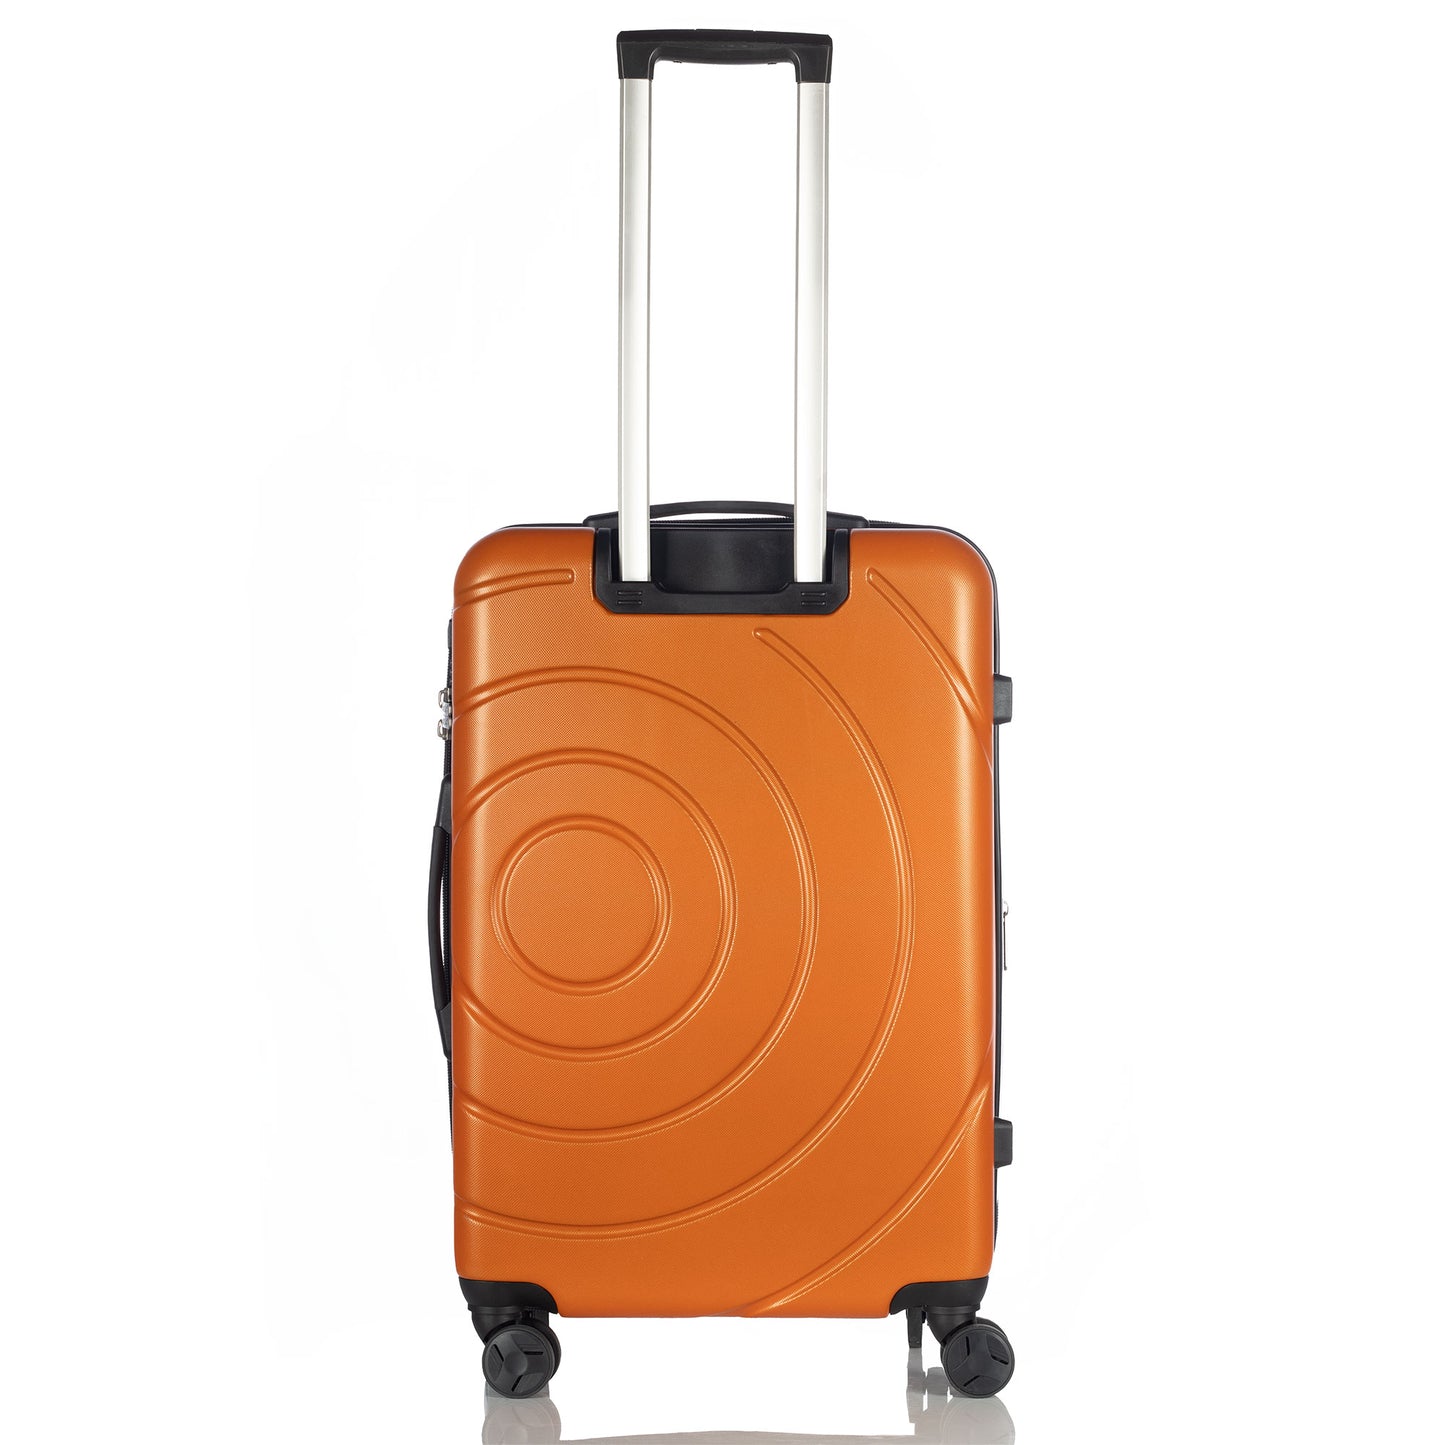 Hardhead Luggage 3 pieces set (20/24/28") Eco Hardside Travel Suitcase with 4 360 Wheels Lock Included, Orange